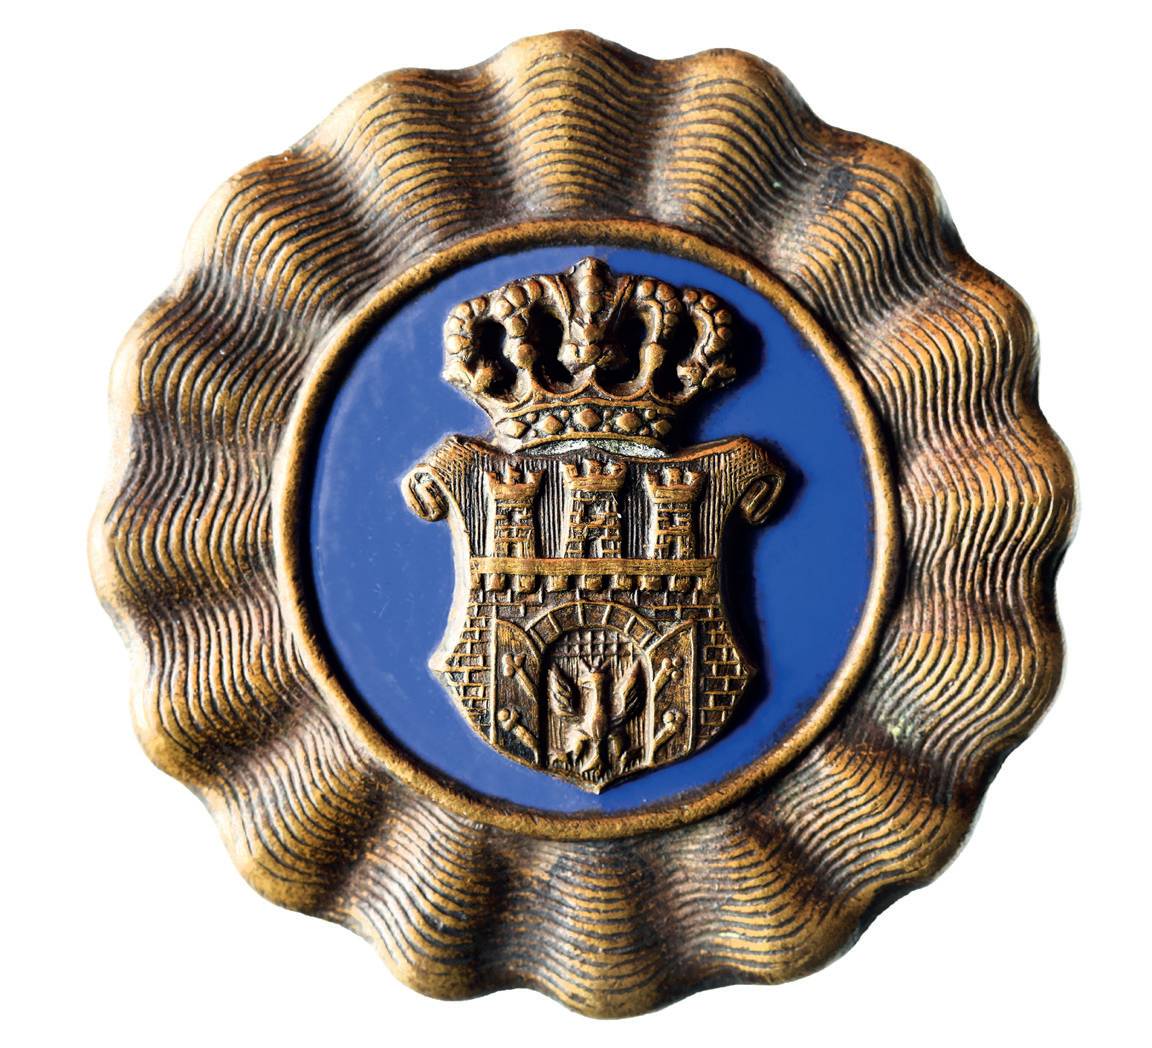 (027) Herb Krakowa umieszony na emalii barwy
szafirowej, wykonany w mosiądzu z odznaki czapkowej
krakowskiej Straży Obywatelskiej, formacji
wprowadzonej w 1917 r., u schyłku I wojny światowej;
jest to herb wedle wzoru utrwalonego już w okresie
autonomicznym (MK, nr inw. MHK 804/III)